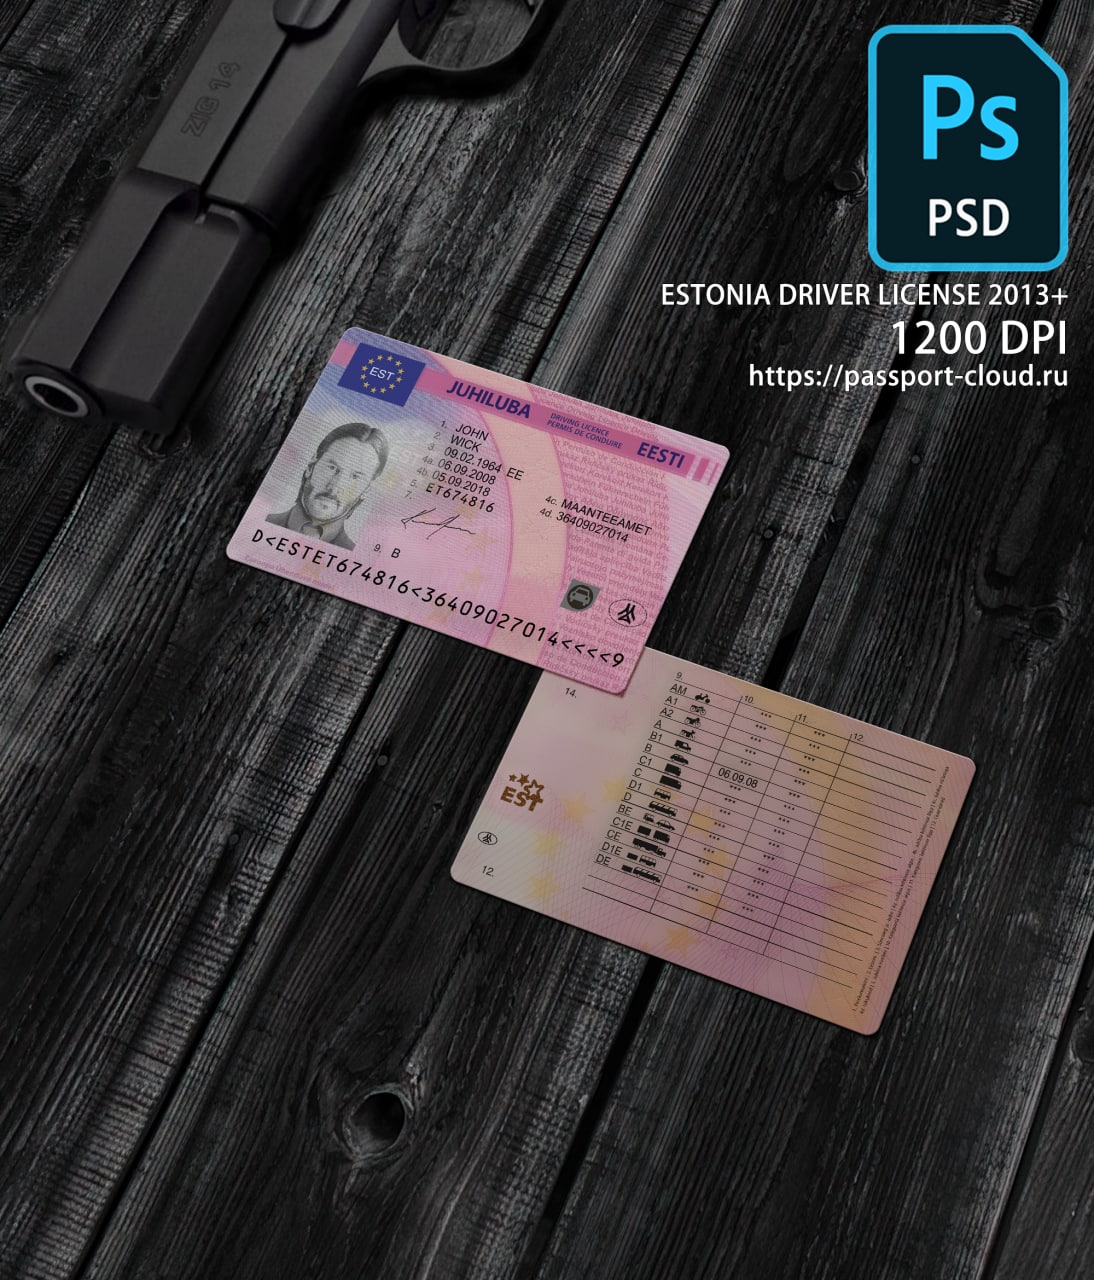 Estonia Driver License 2013+1